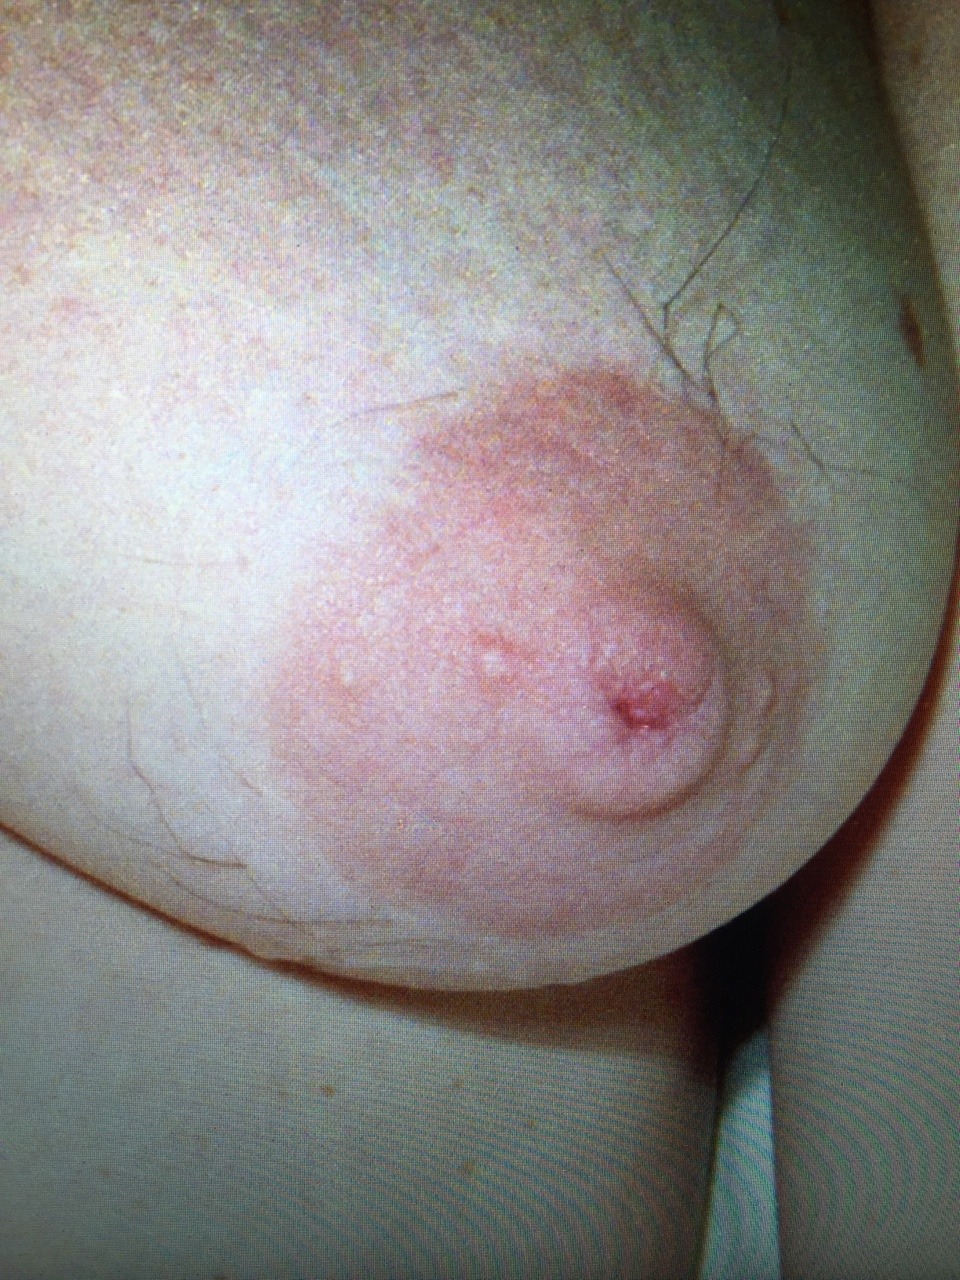 Hairy Nipples Women 26